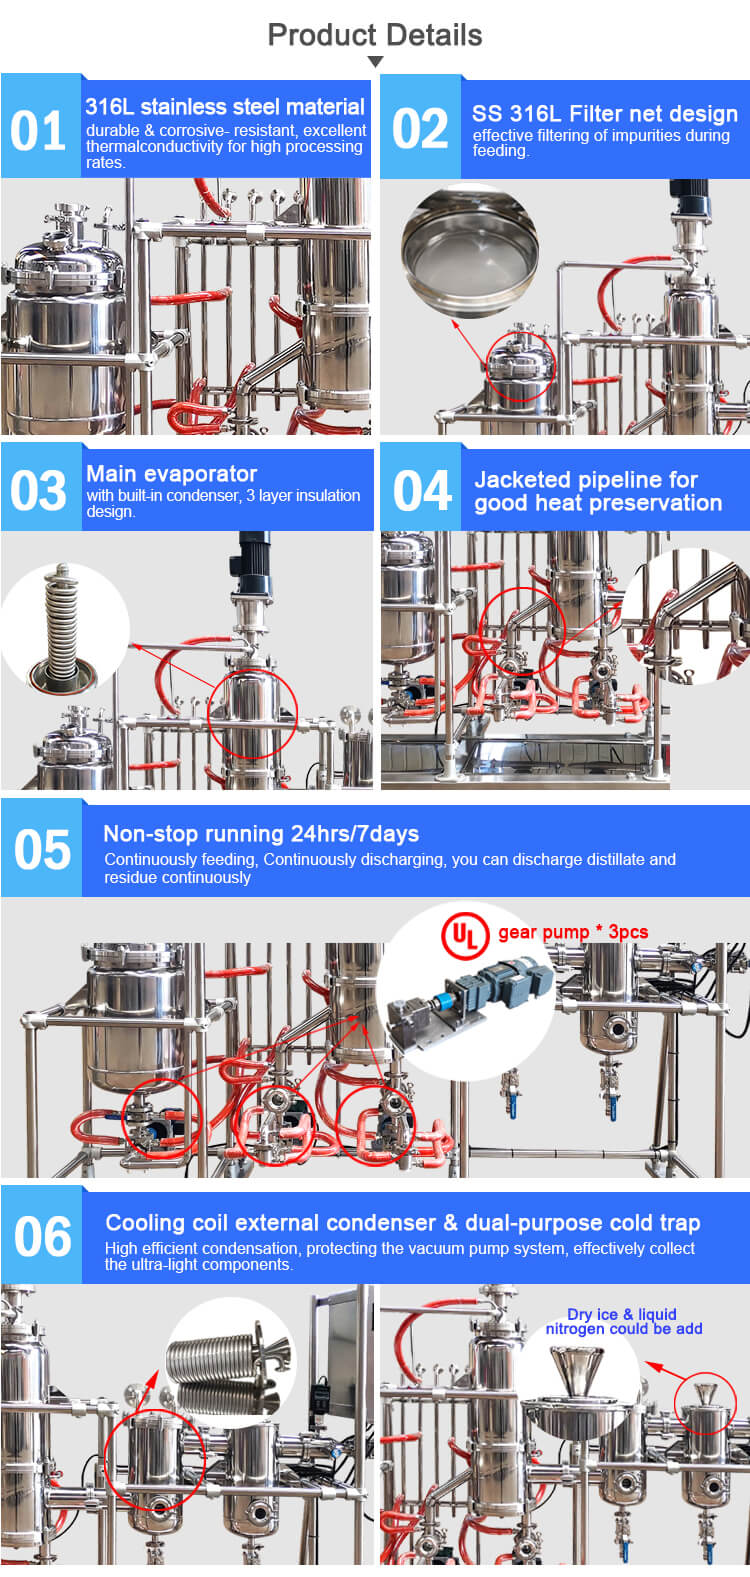 short path molecular distillation unit;